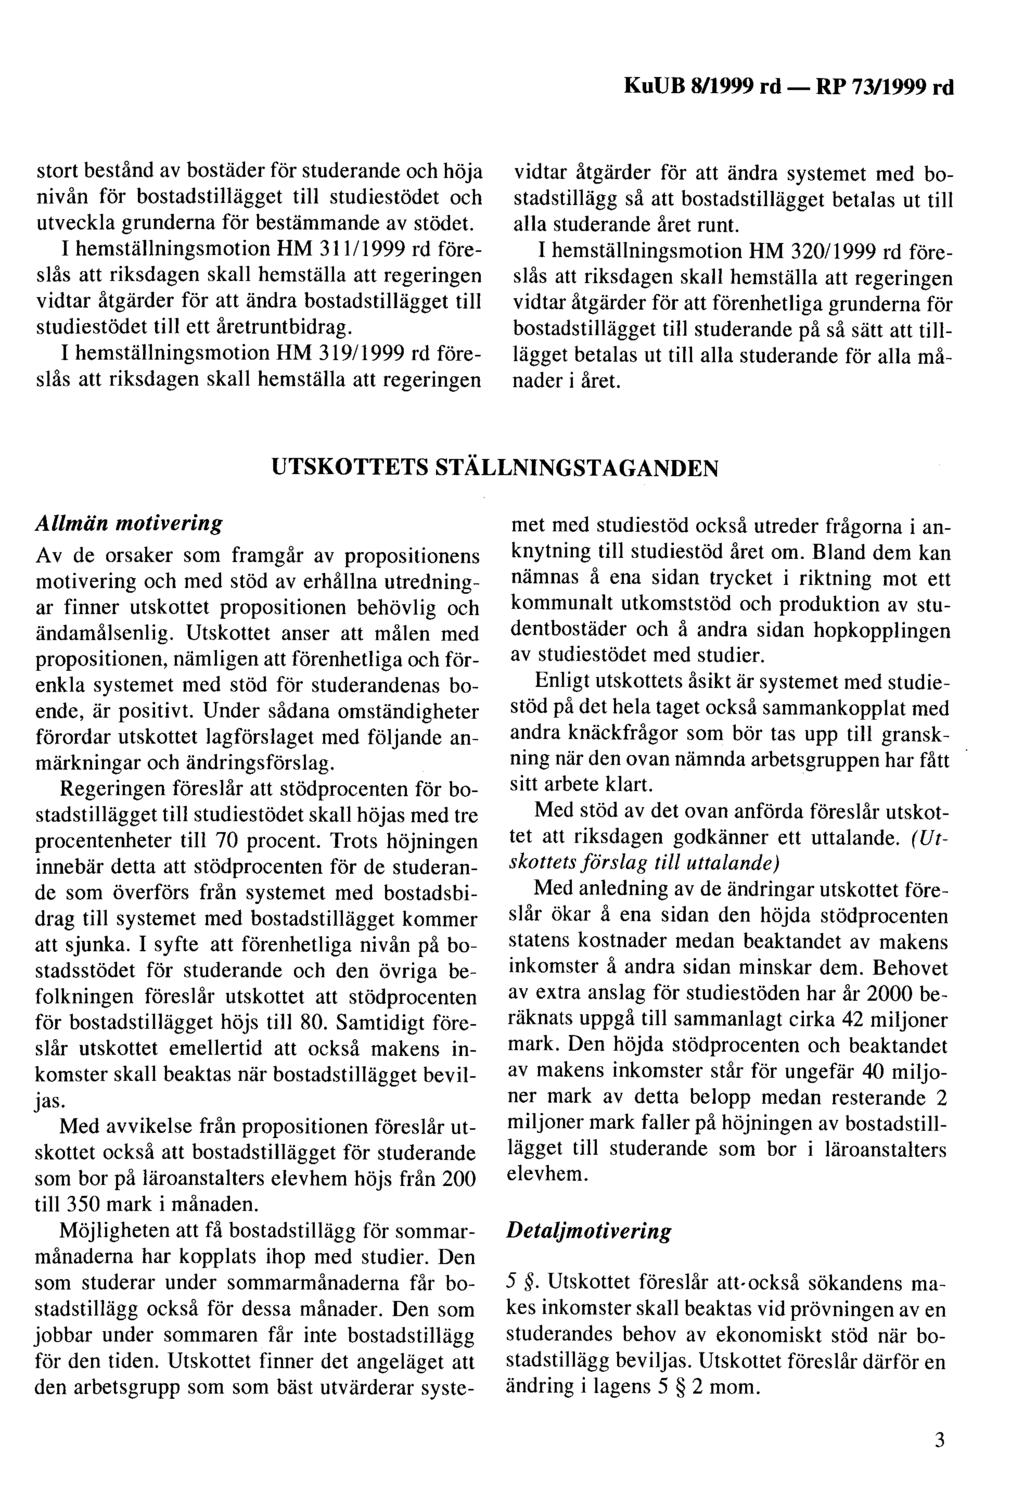 KuUB 8/1999 rd- stort bestånd av bostäder för studerande och höja nivån för bostadstillägget till studiestödet och utveckla grunderna för bestämmande av stödet.